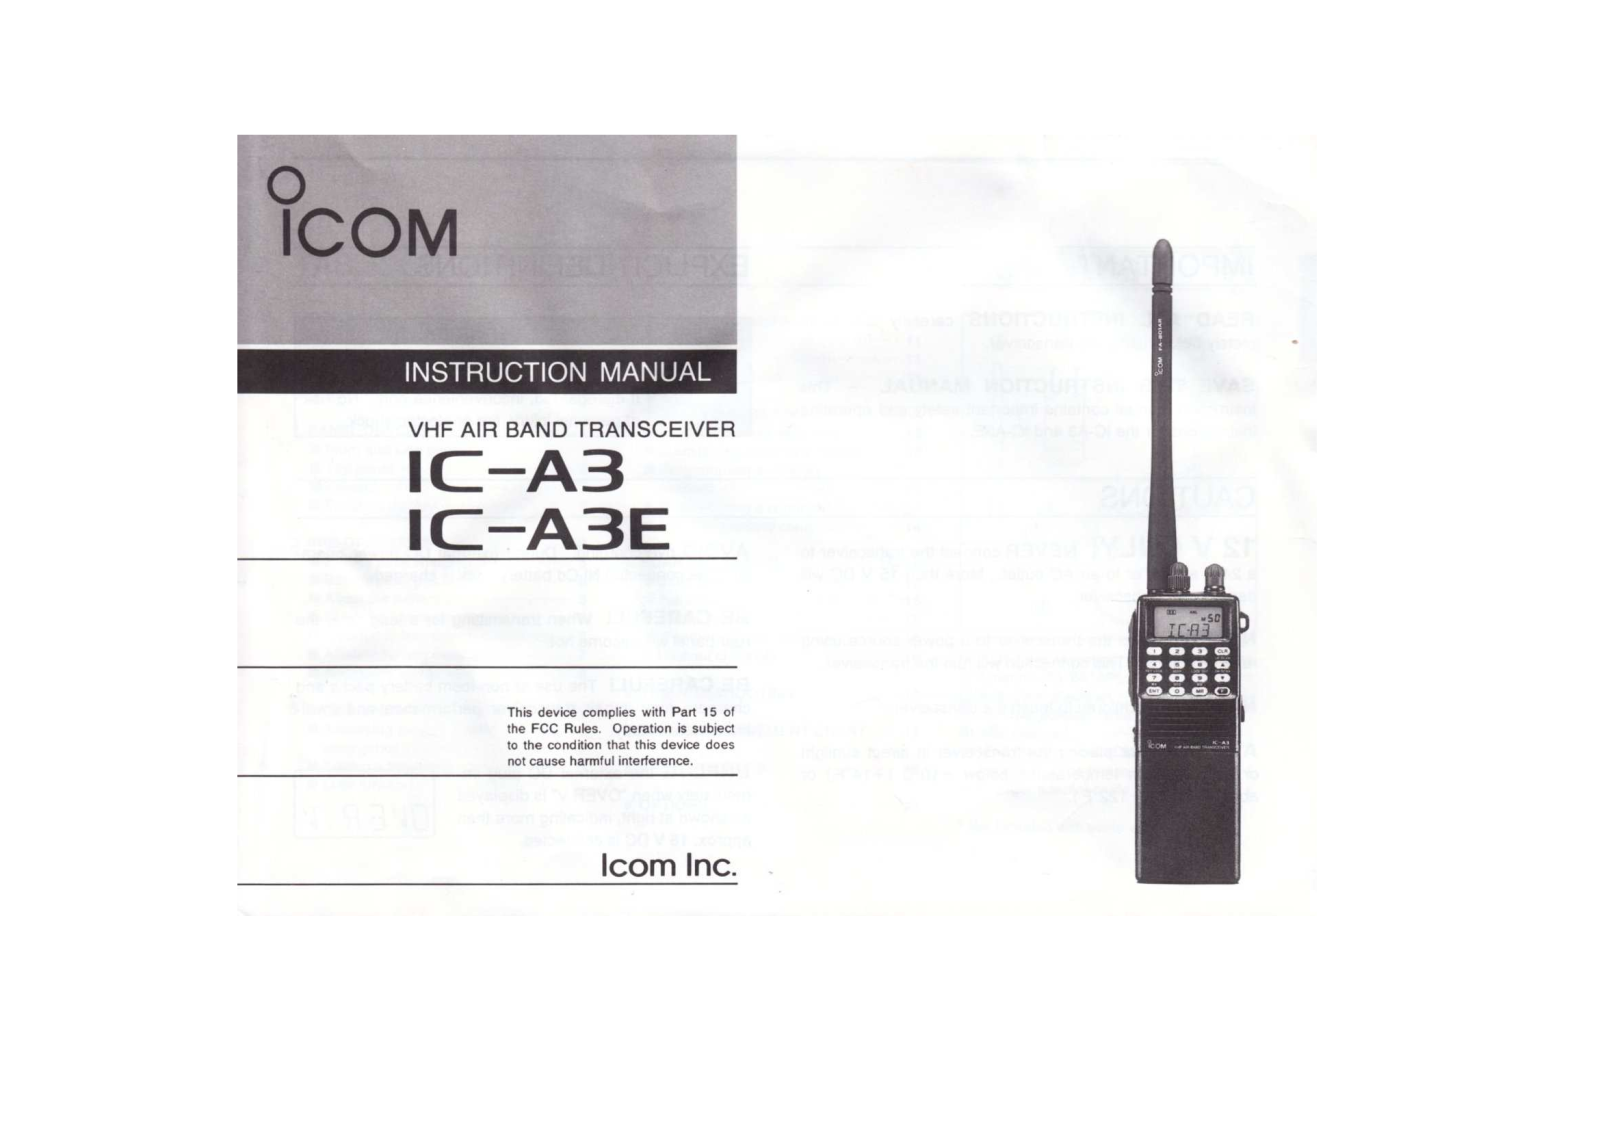 ICOM IC-A3, IC-A3E User Manual